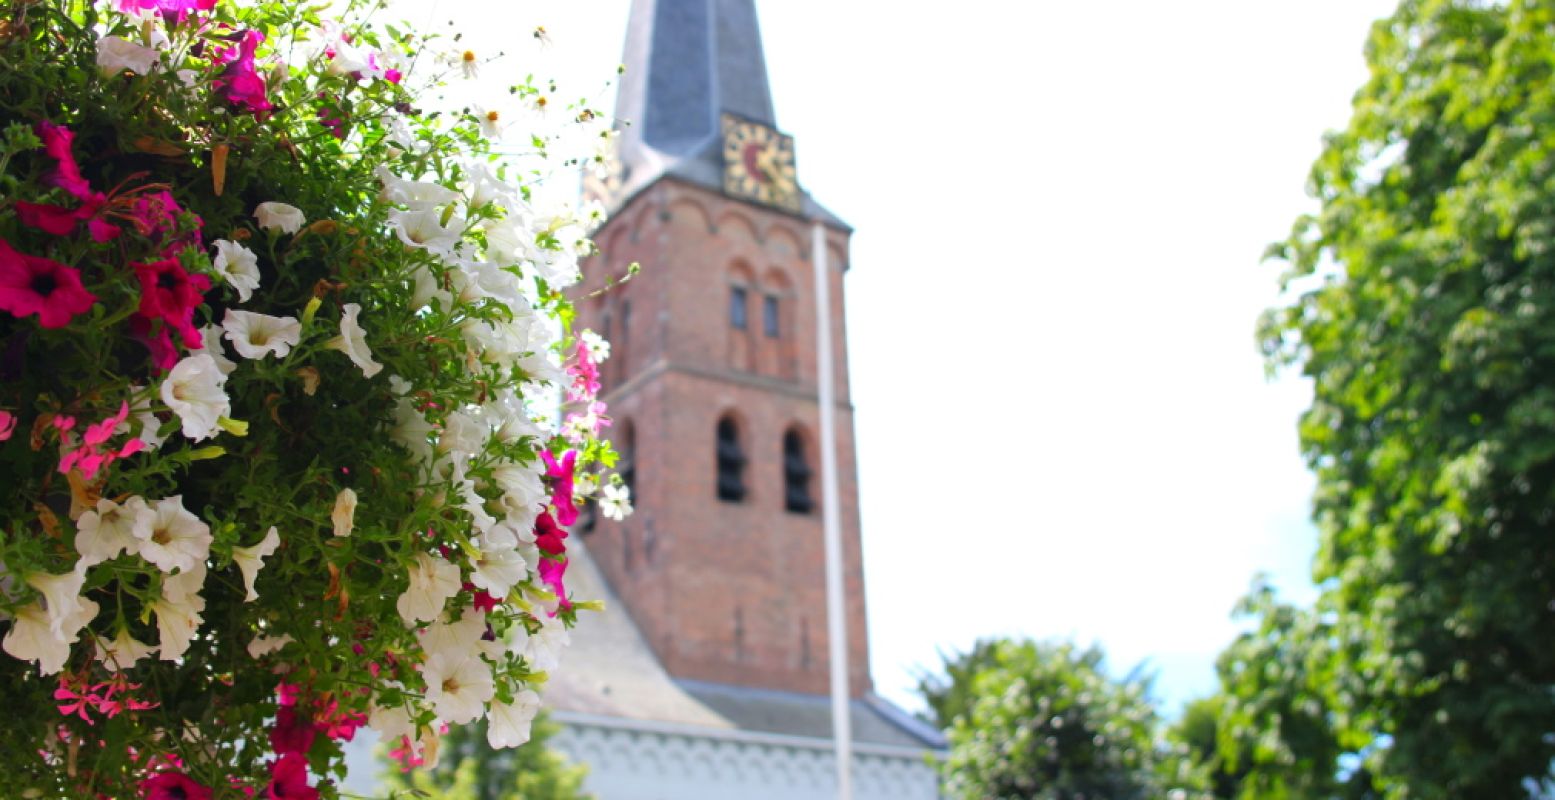 Bezoek deze bezienswaardigheden en hotspots in Baarn. Foto: DagjeWeg.NL, Coby Boschma.